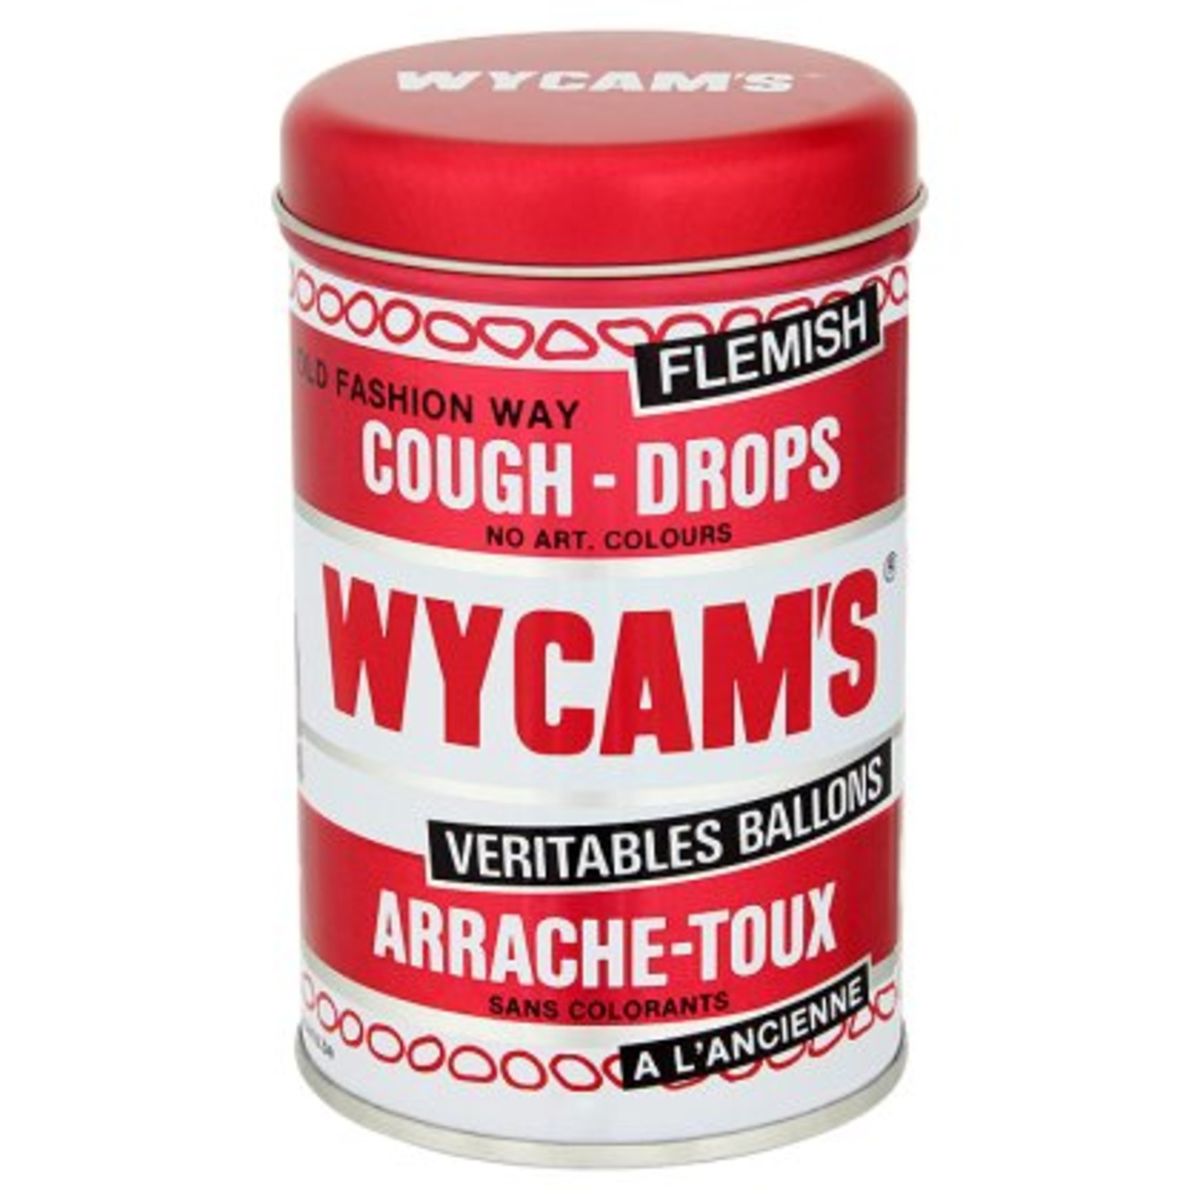 Wycam's Veritables Ballons Arrache-Toux à l'Ancienne 325 g